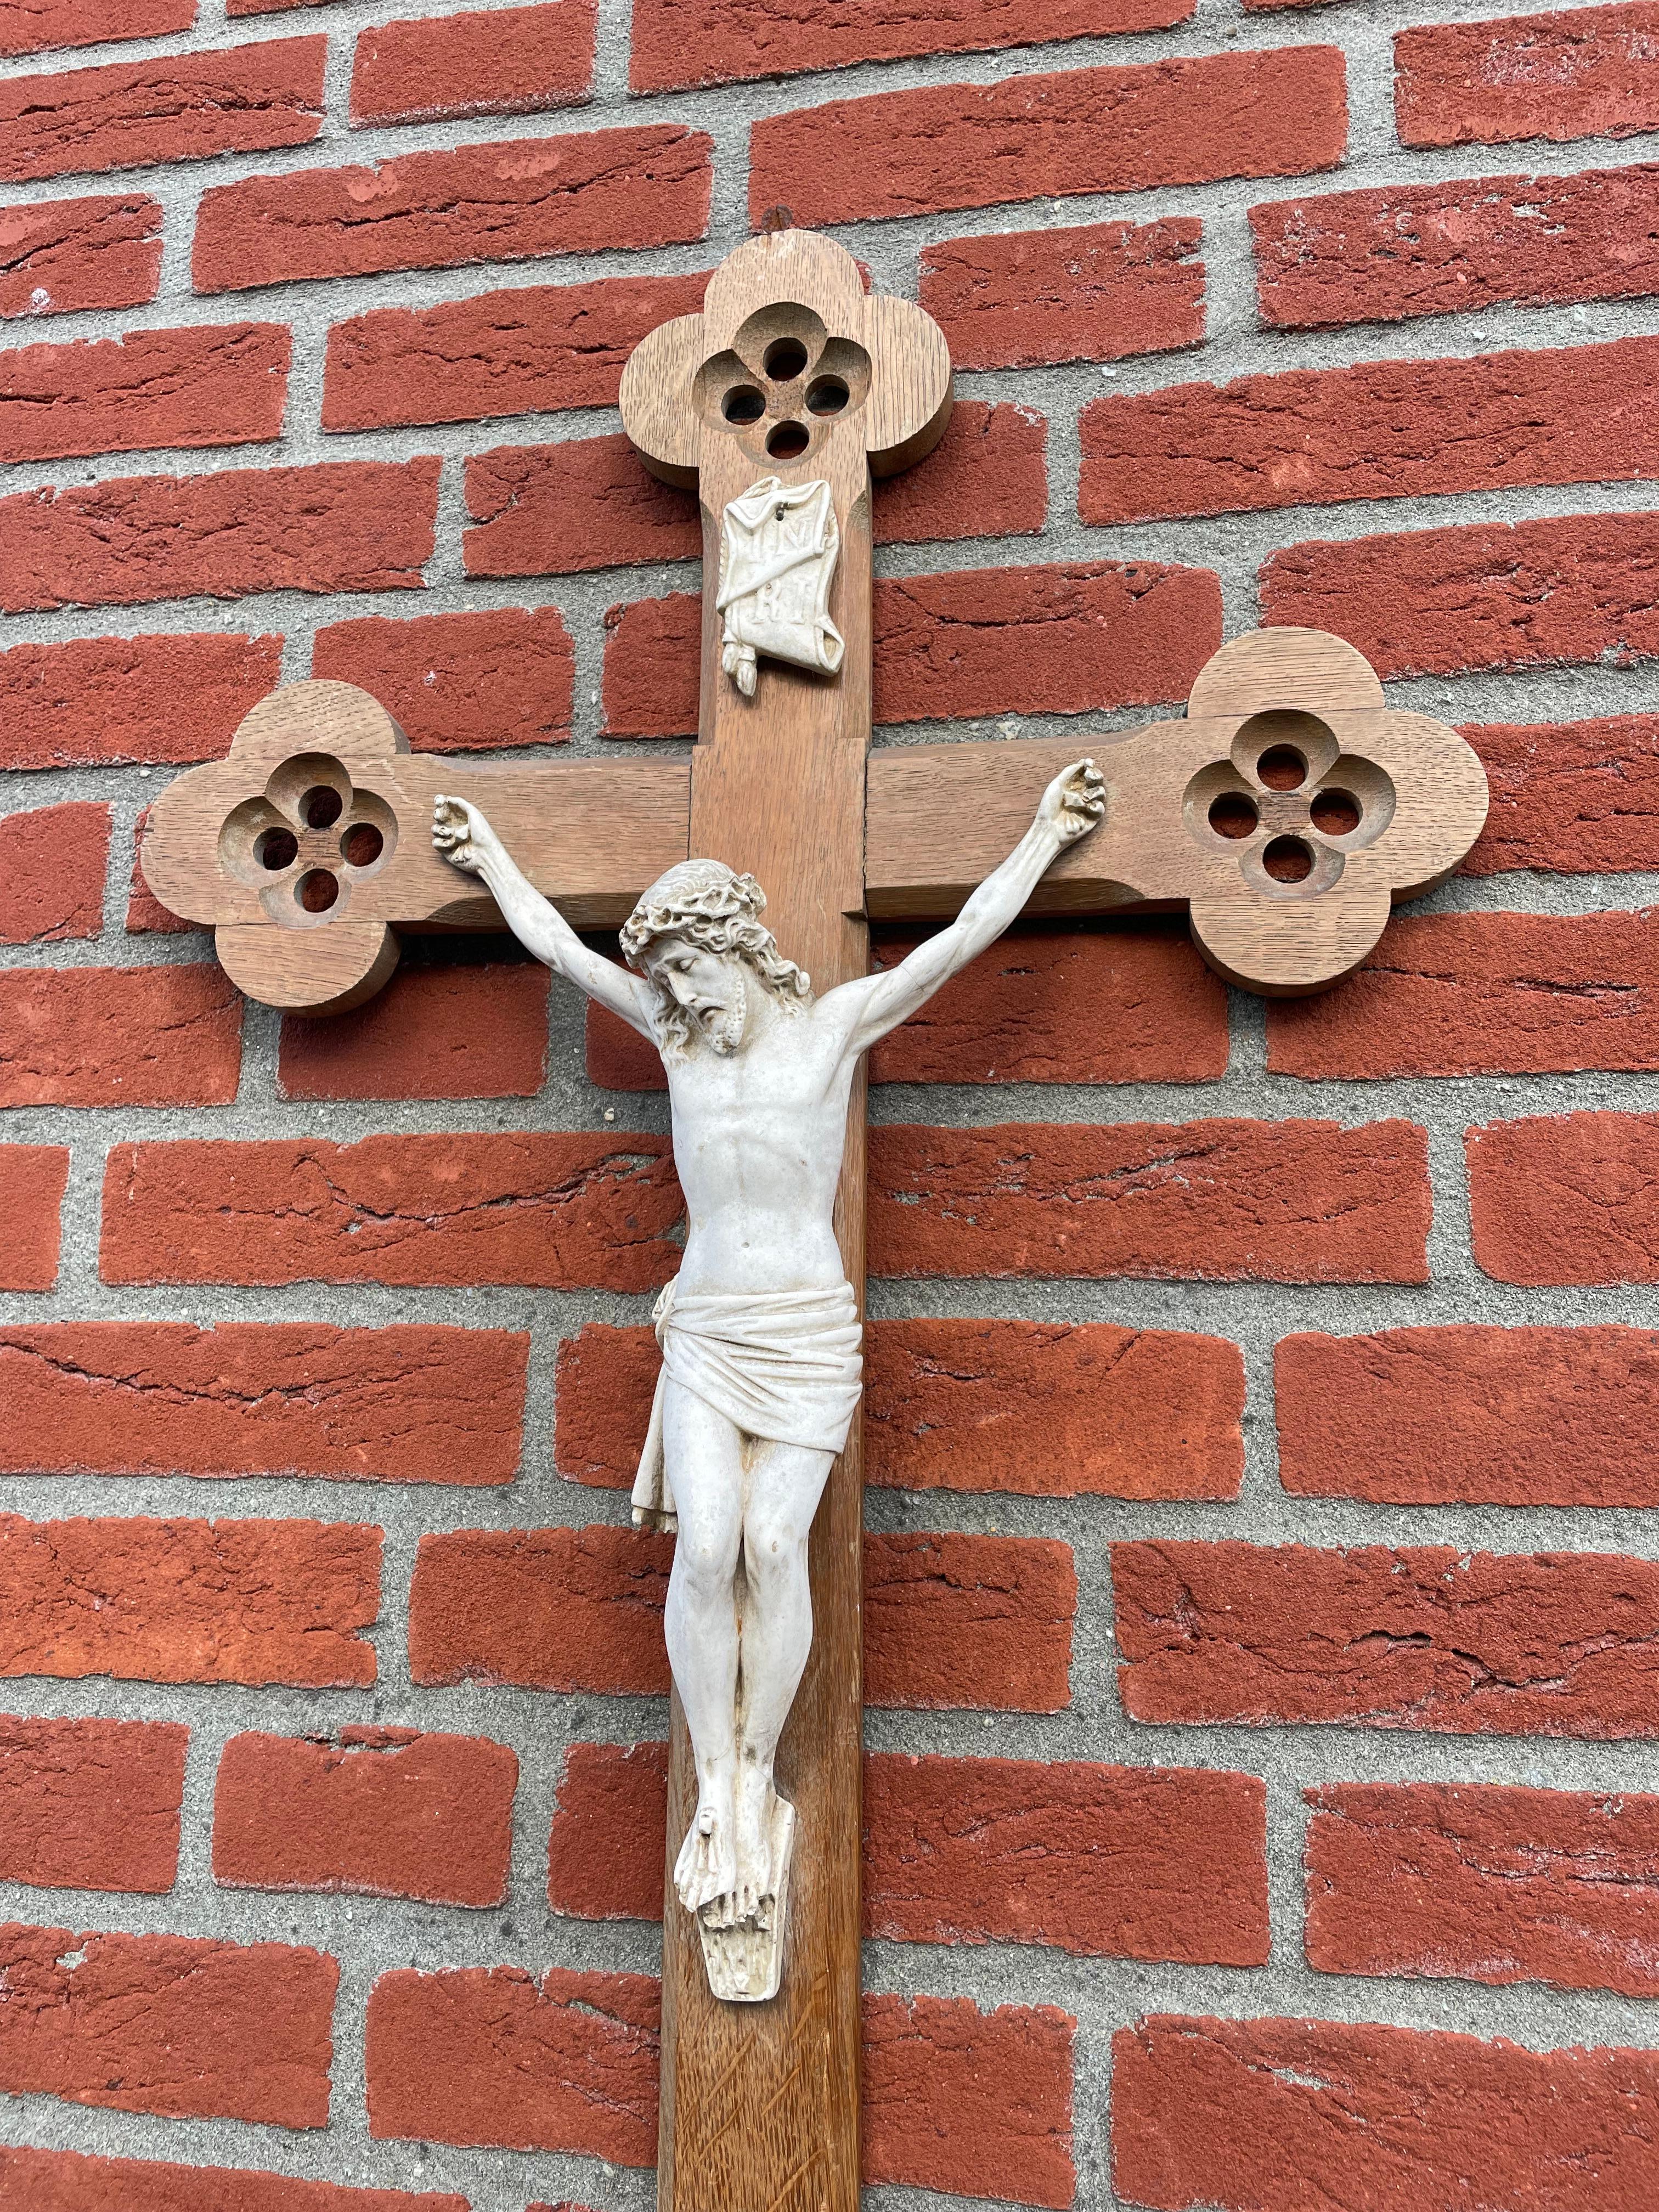 Kirchliches Kruzifix im gotischen Stil mit einem wunderschön detaillierten Christuskorpus aus Ton.

Was dieses stilvolle Kruzifix zu etwas ganz Besonderem macht, sind die gotischen Vierblattelemente, die an allen Enden des Kreuzes handgeschnitzt